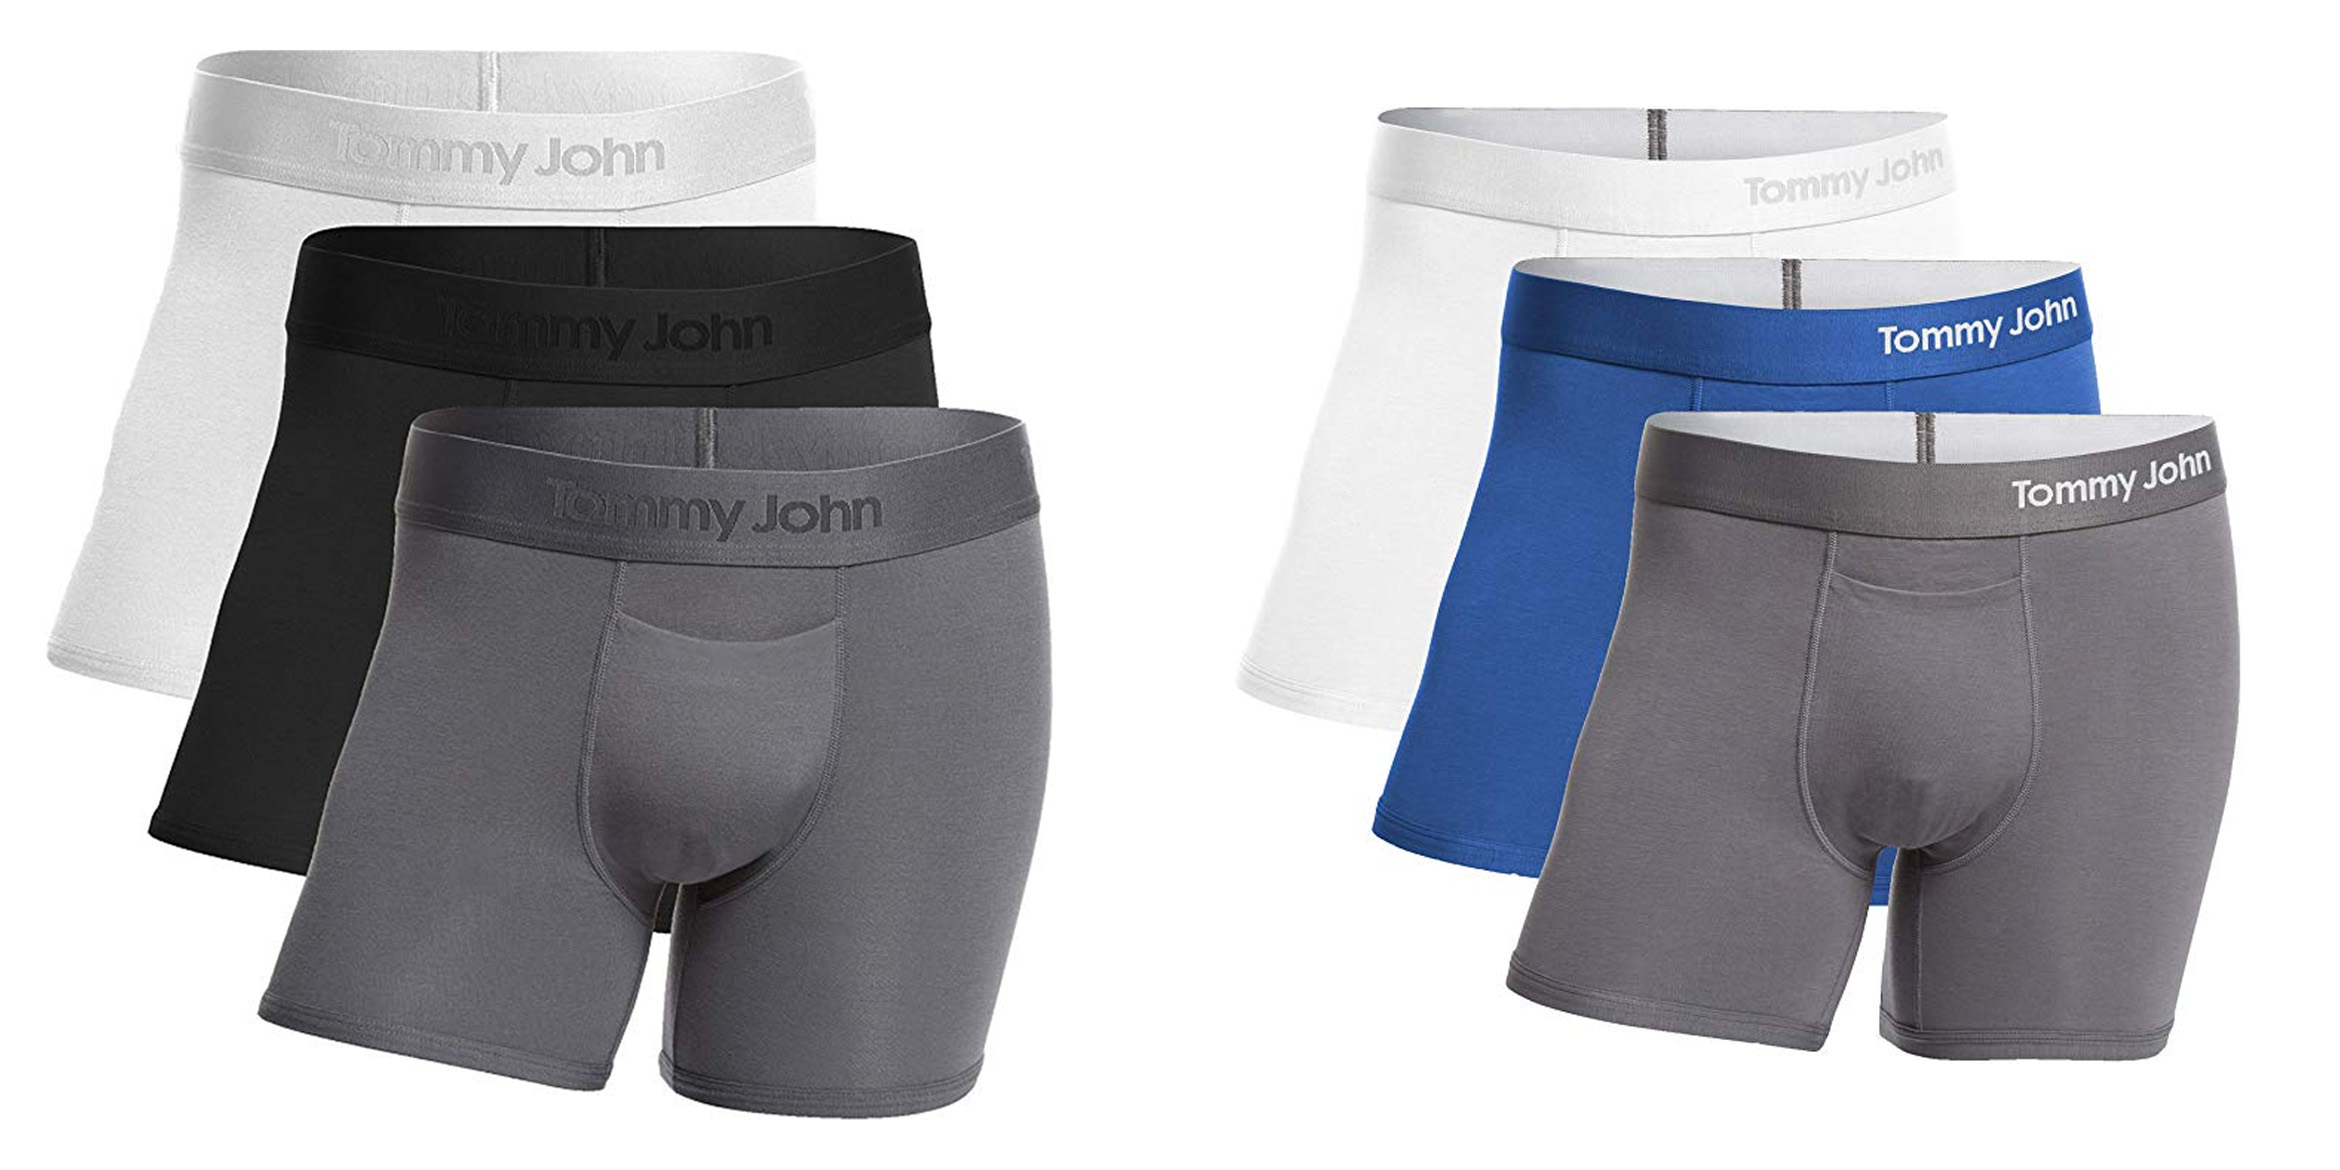 tommy john underwear for men